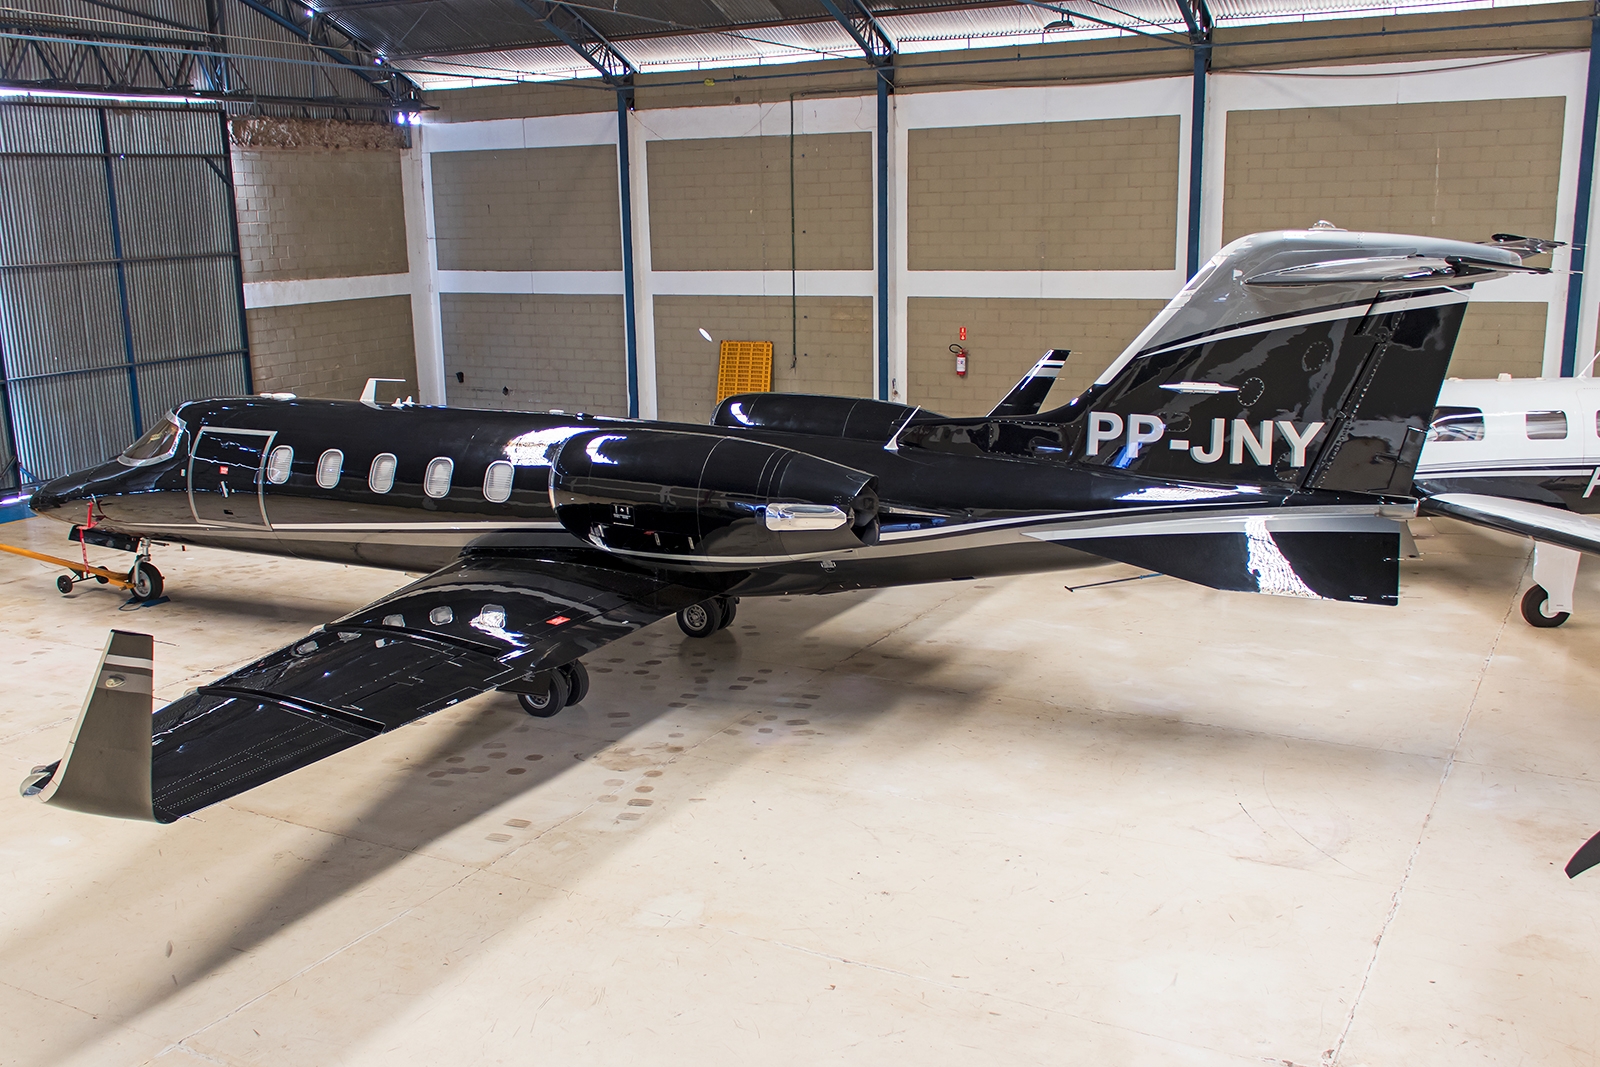 PP-JNY - Bombardier Learjet 31A